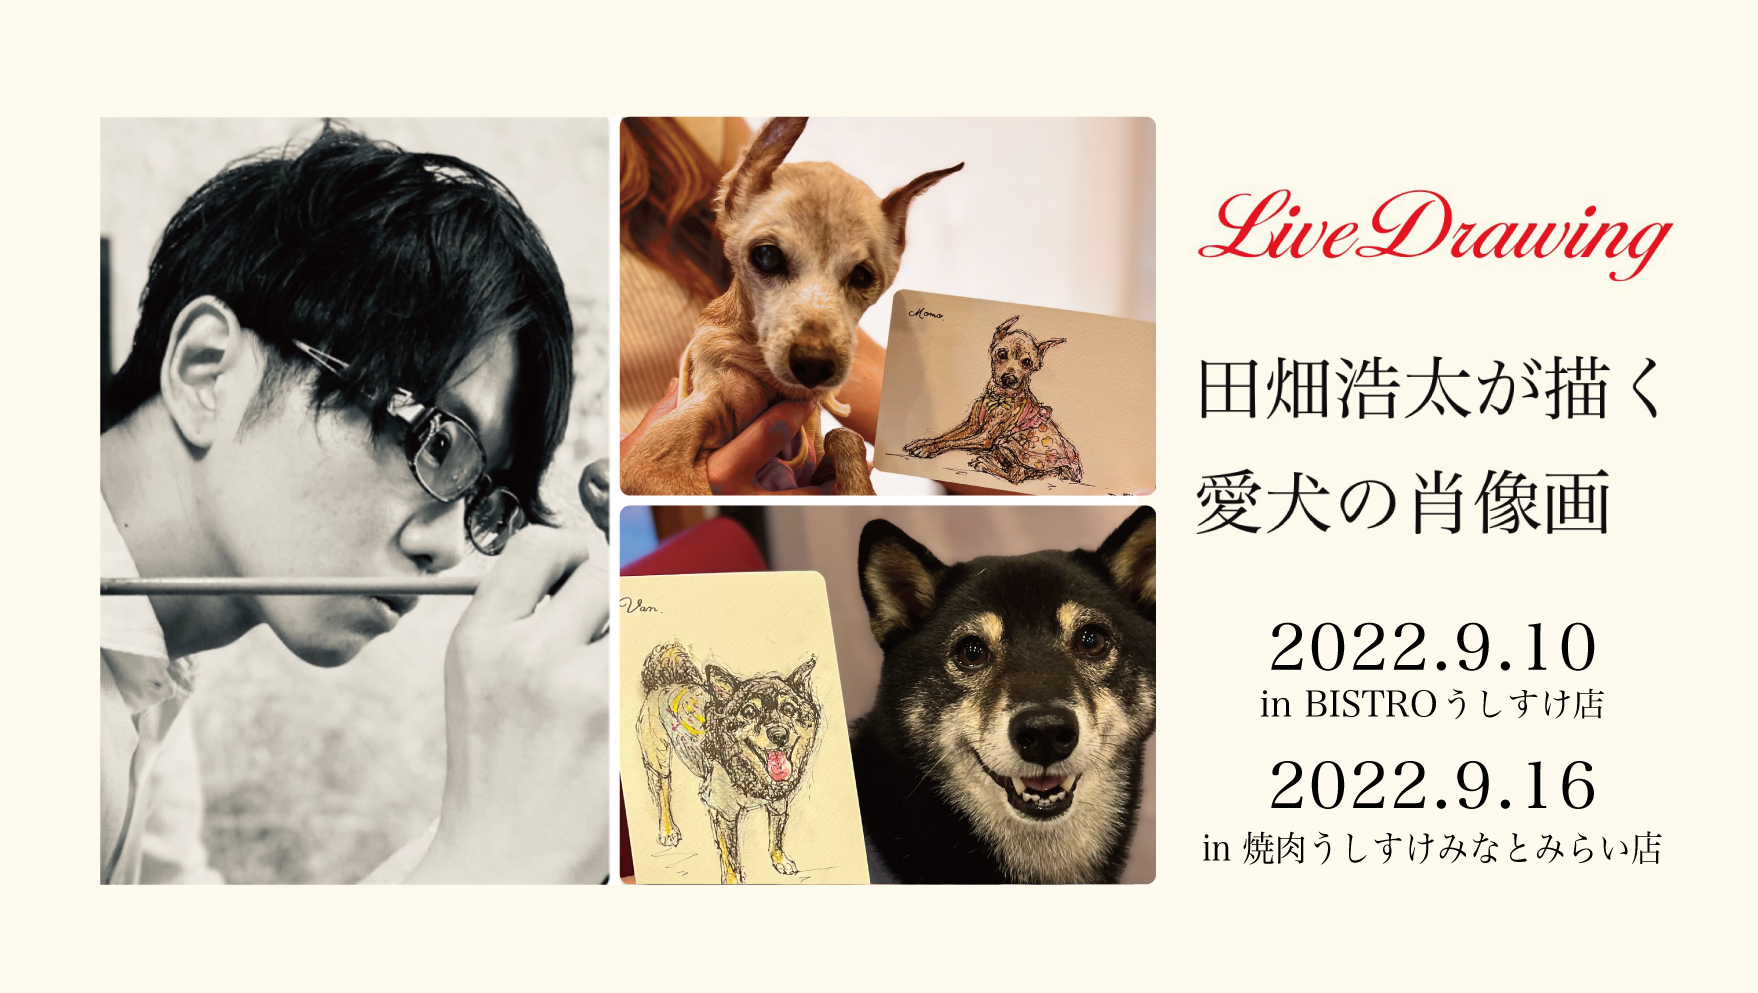 愛犬の「今日」を永遠に--第3・4回！うしすけ×アートポラリスの『ライブドローイング』イベント開催